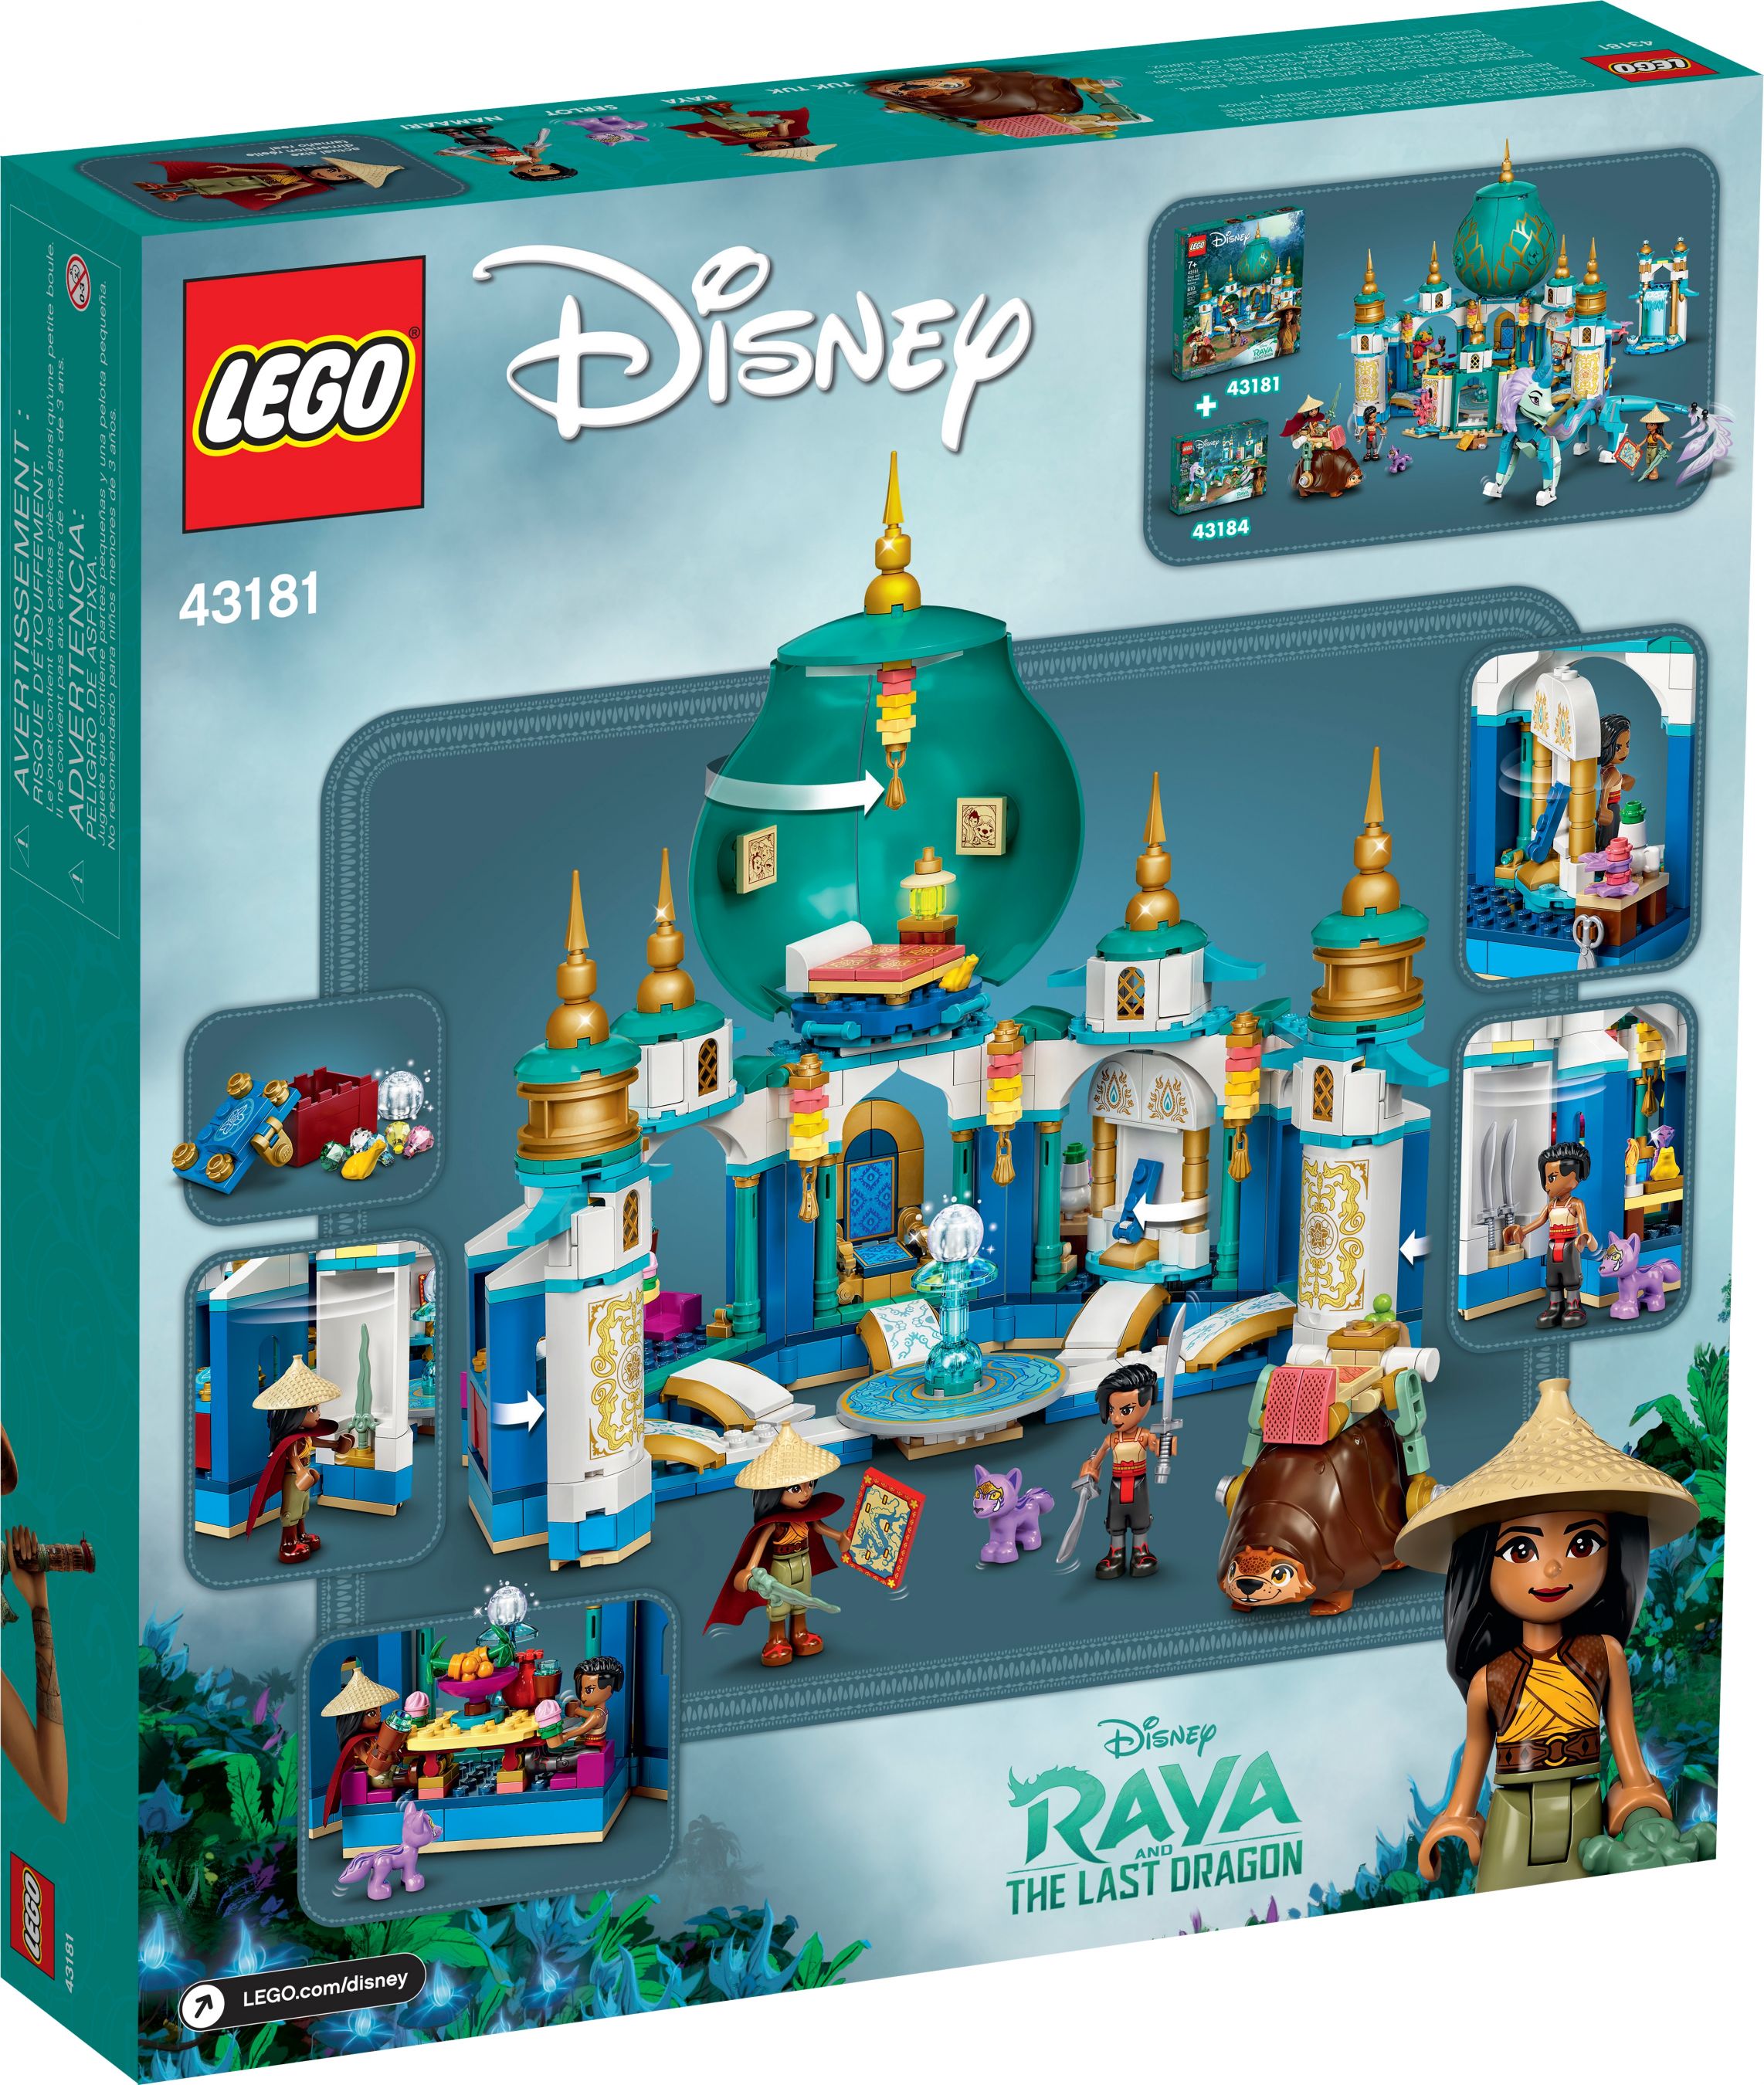 LEGO Disney 43181 Raya und der Herzpalast LEGO_43181_alt11.jpg